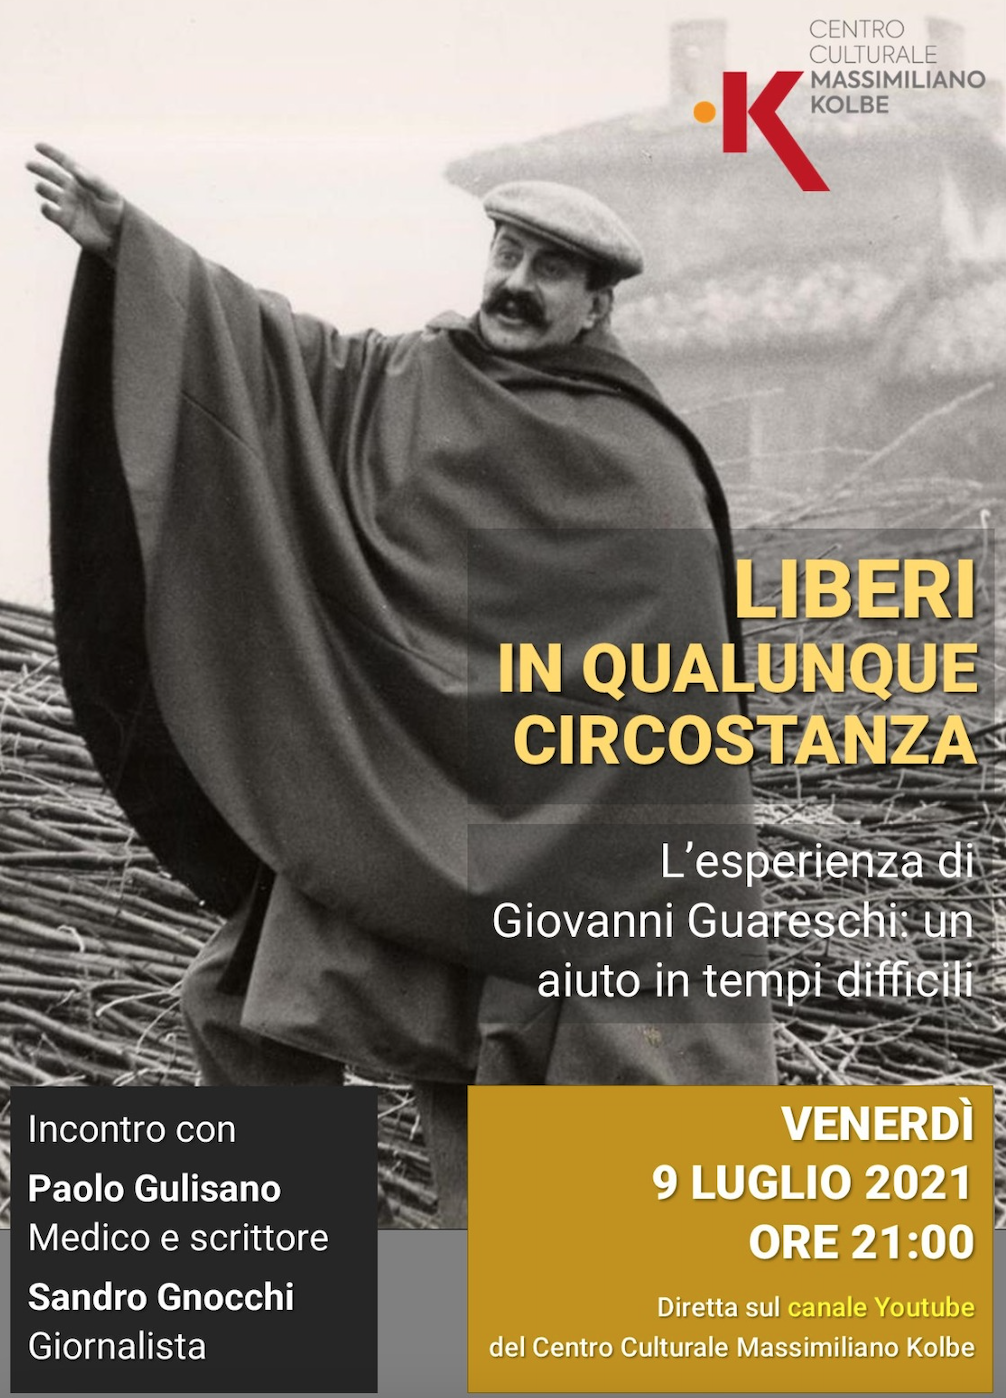 Featured image for “Varese: Liberi in qualunque circostanza”